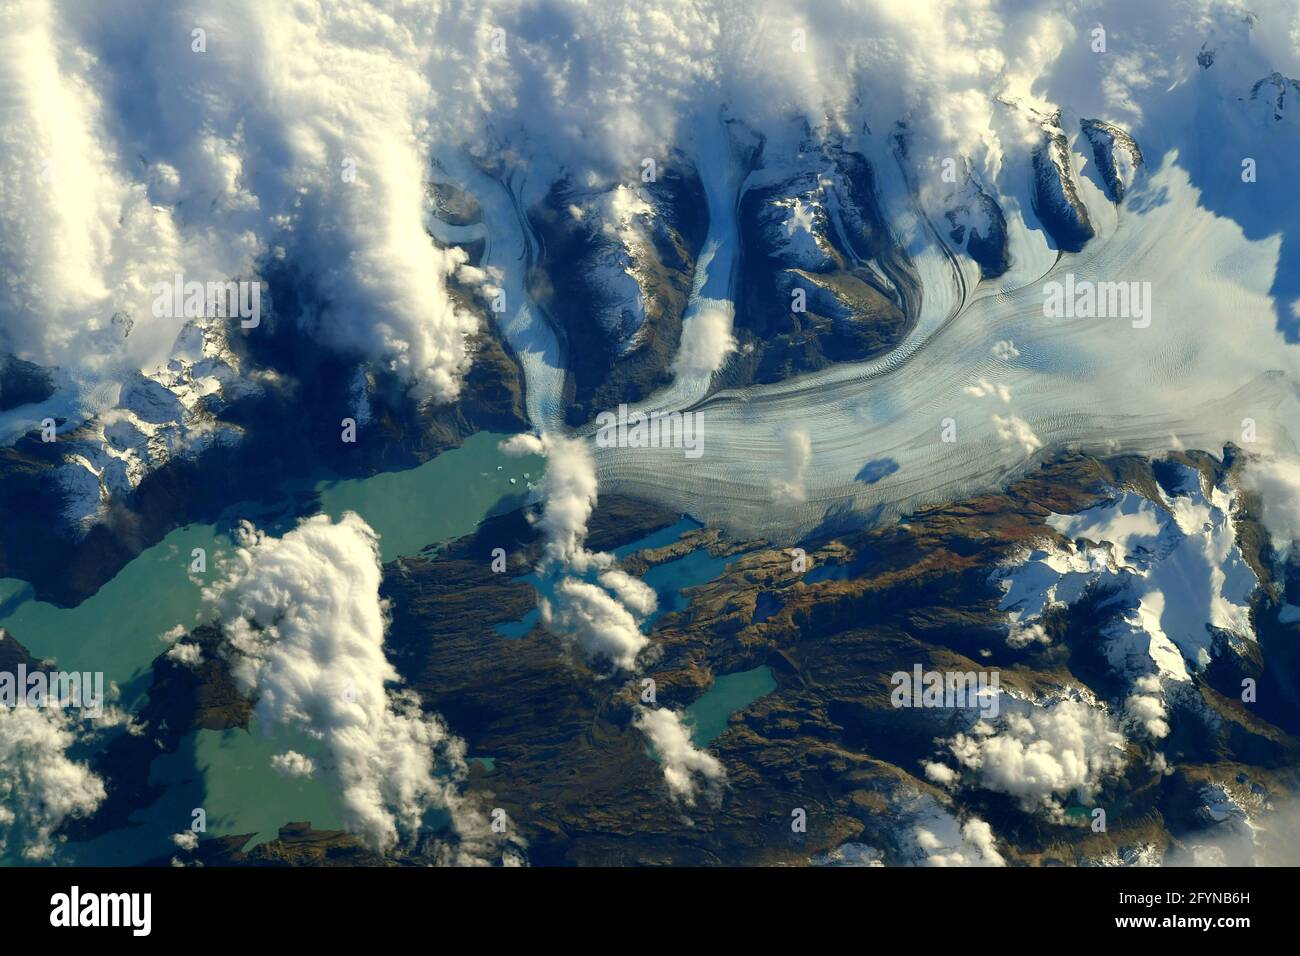 GLACIAR UPSALA, ARGENTINA - 08 de mayo de 2021 - Vista aérea del Glaciar Upsala en los Andes de Argentina fotografiado desde la Estatio Espacial Internacional Foto de stock